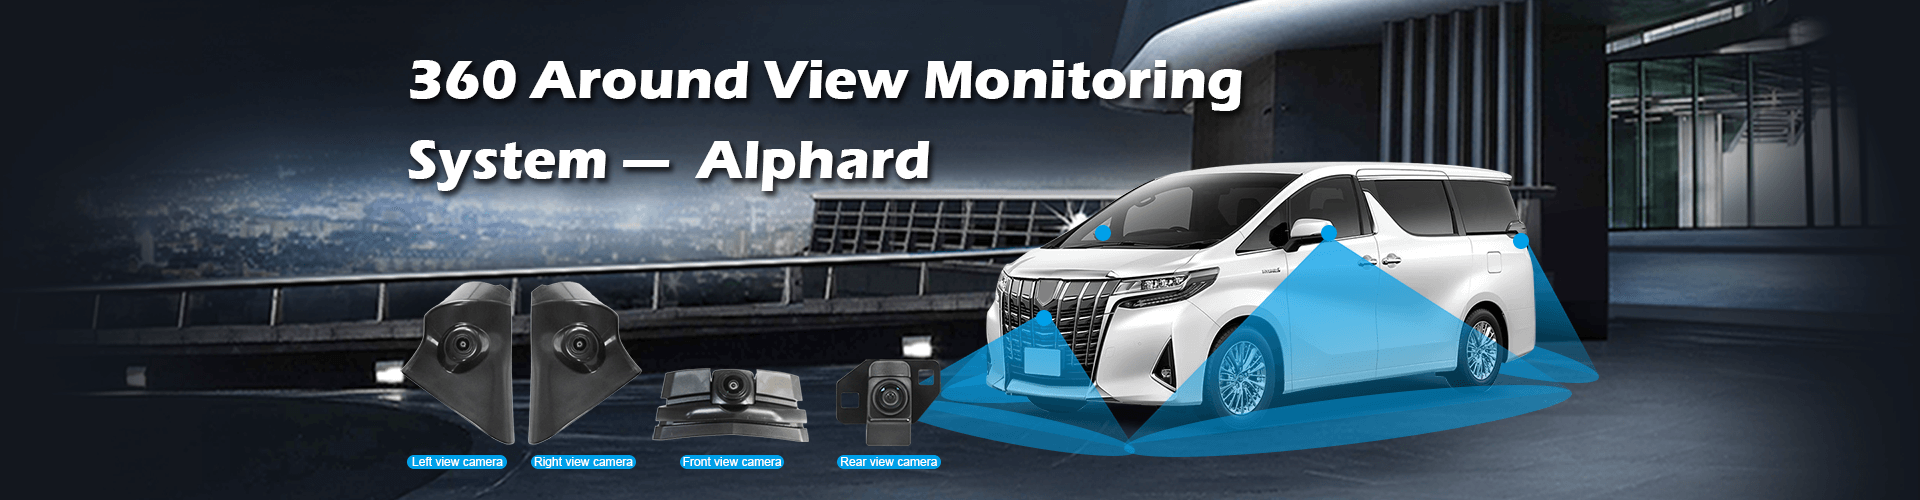 360 система мониторинга кругового обзора для конкретного транспортного средства Alphard